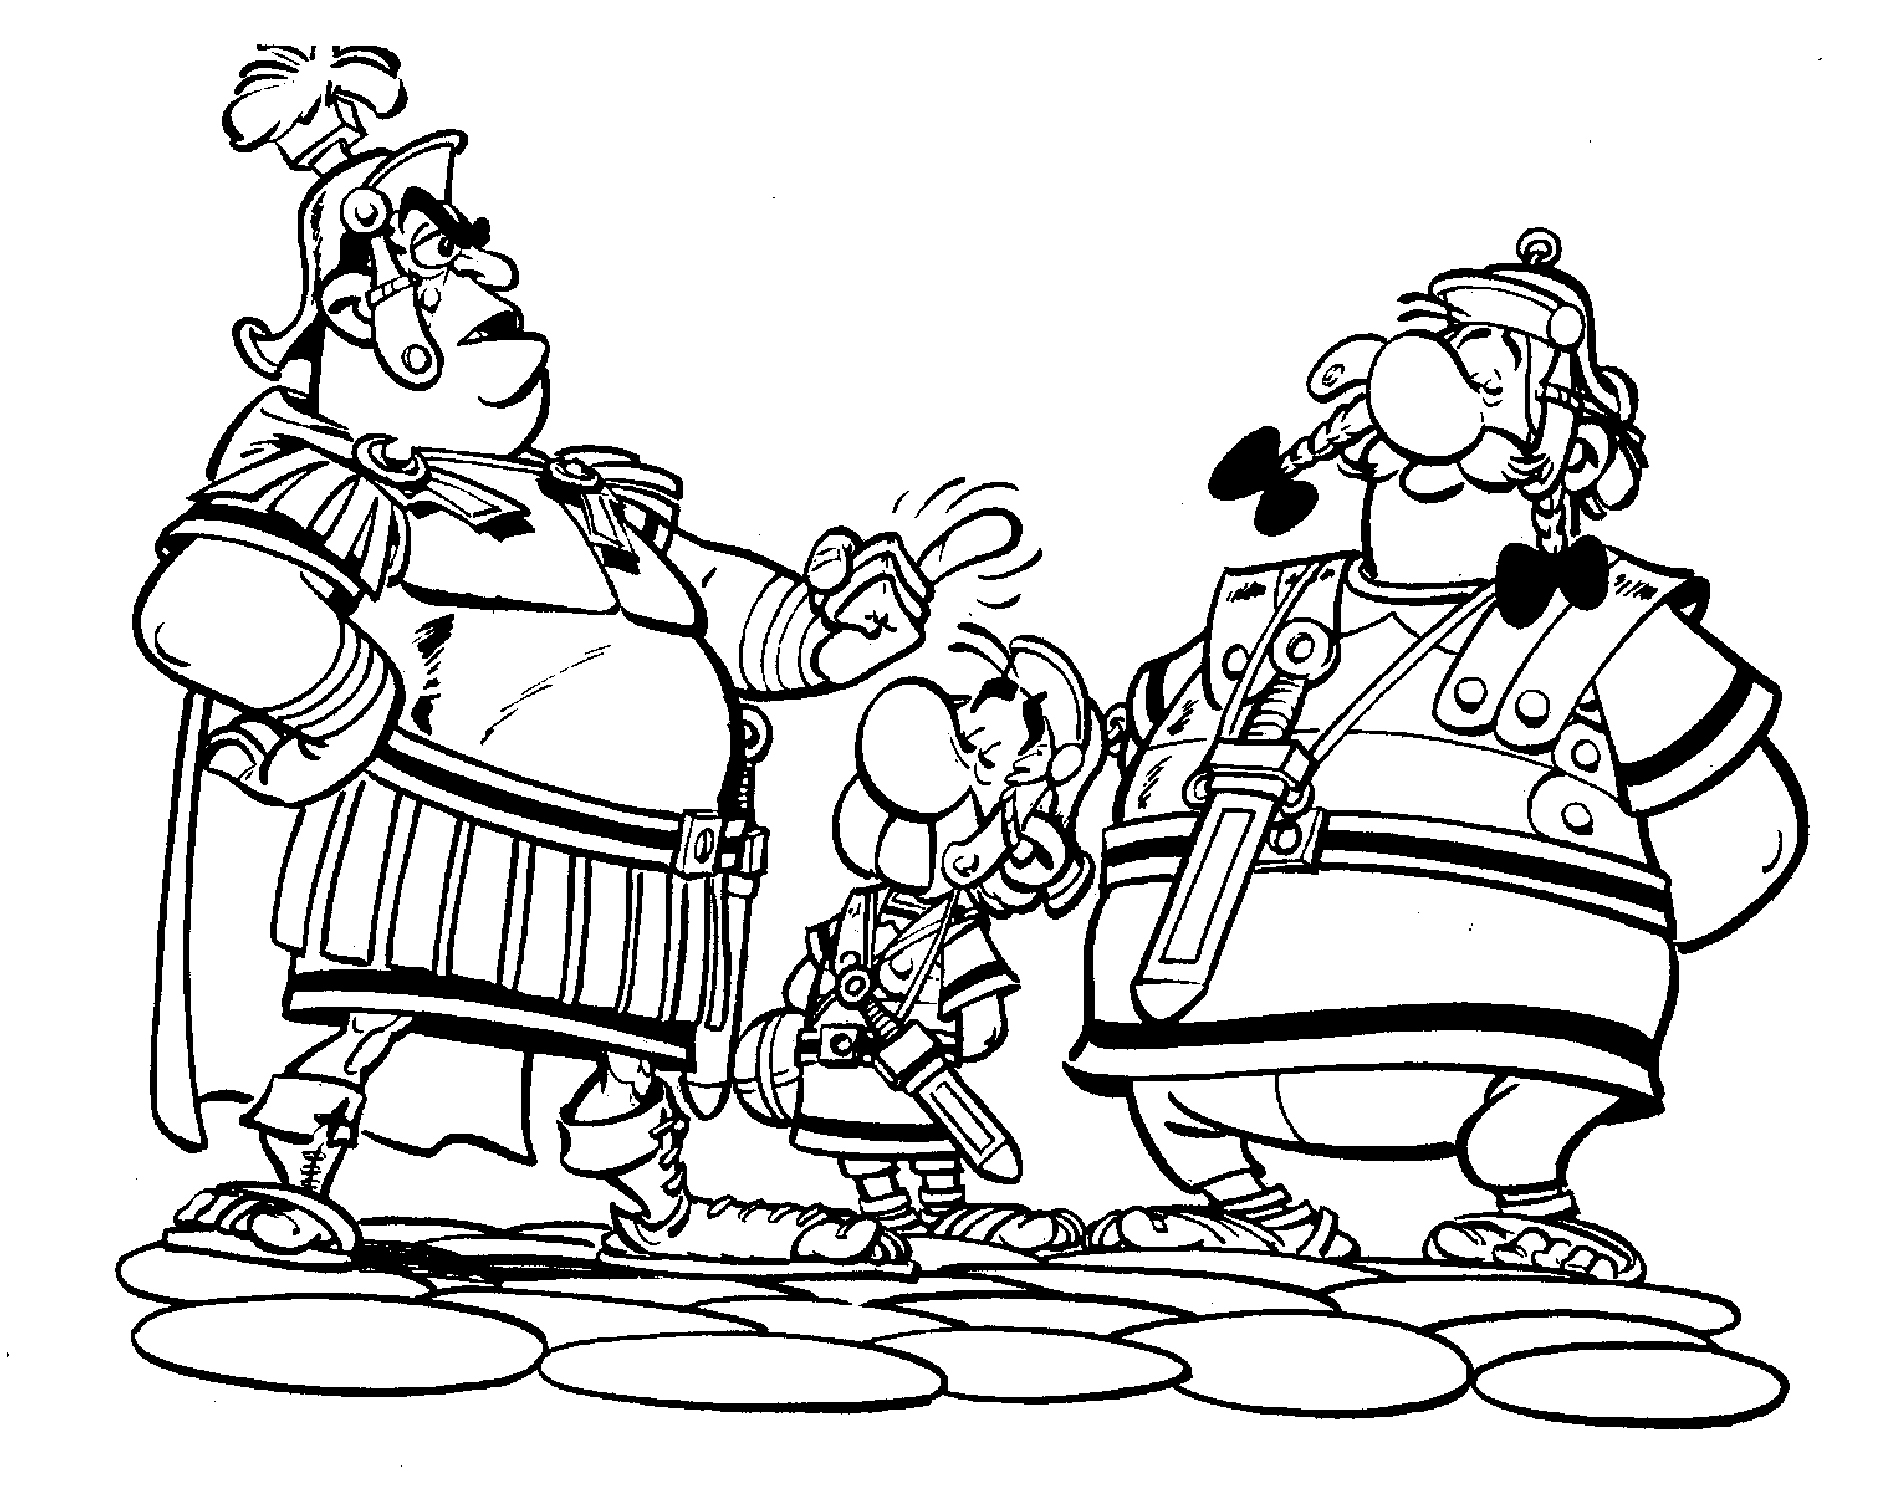 Asterix e Obelix travestimento disegno da colorare